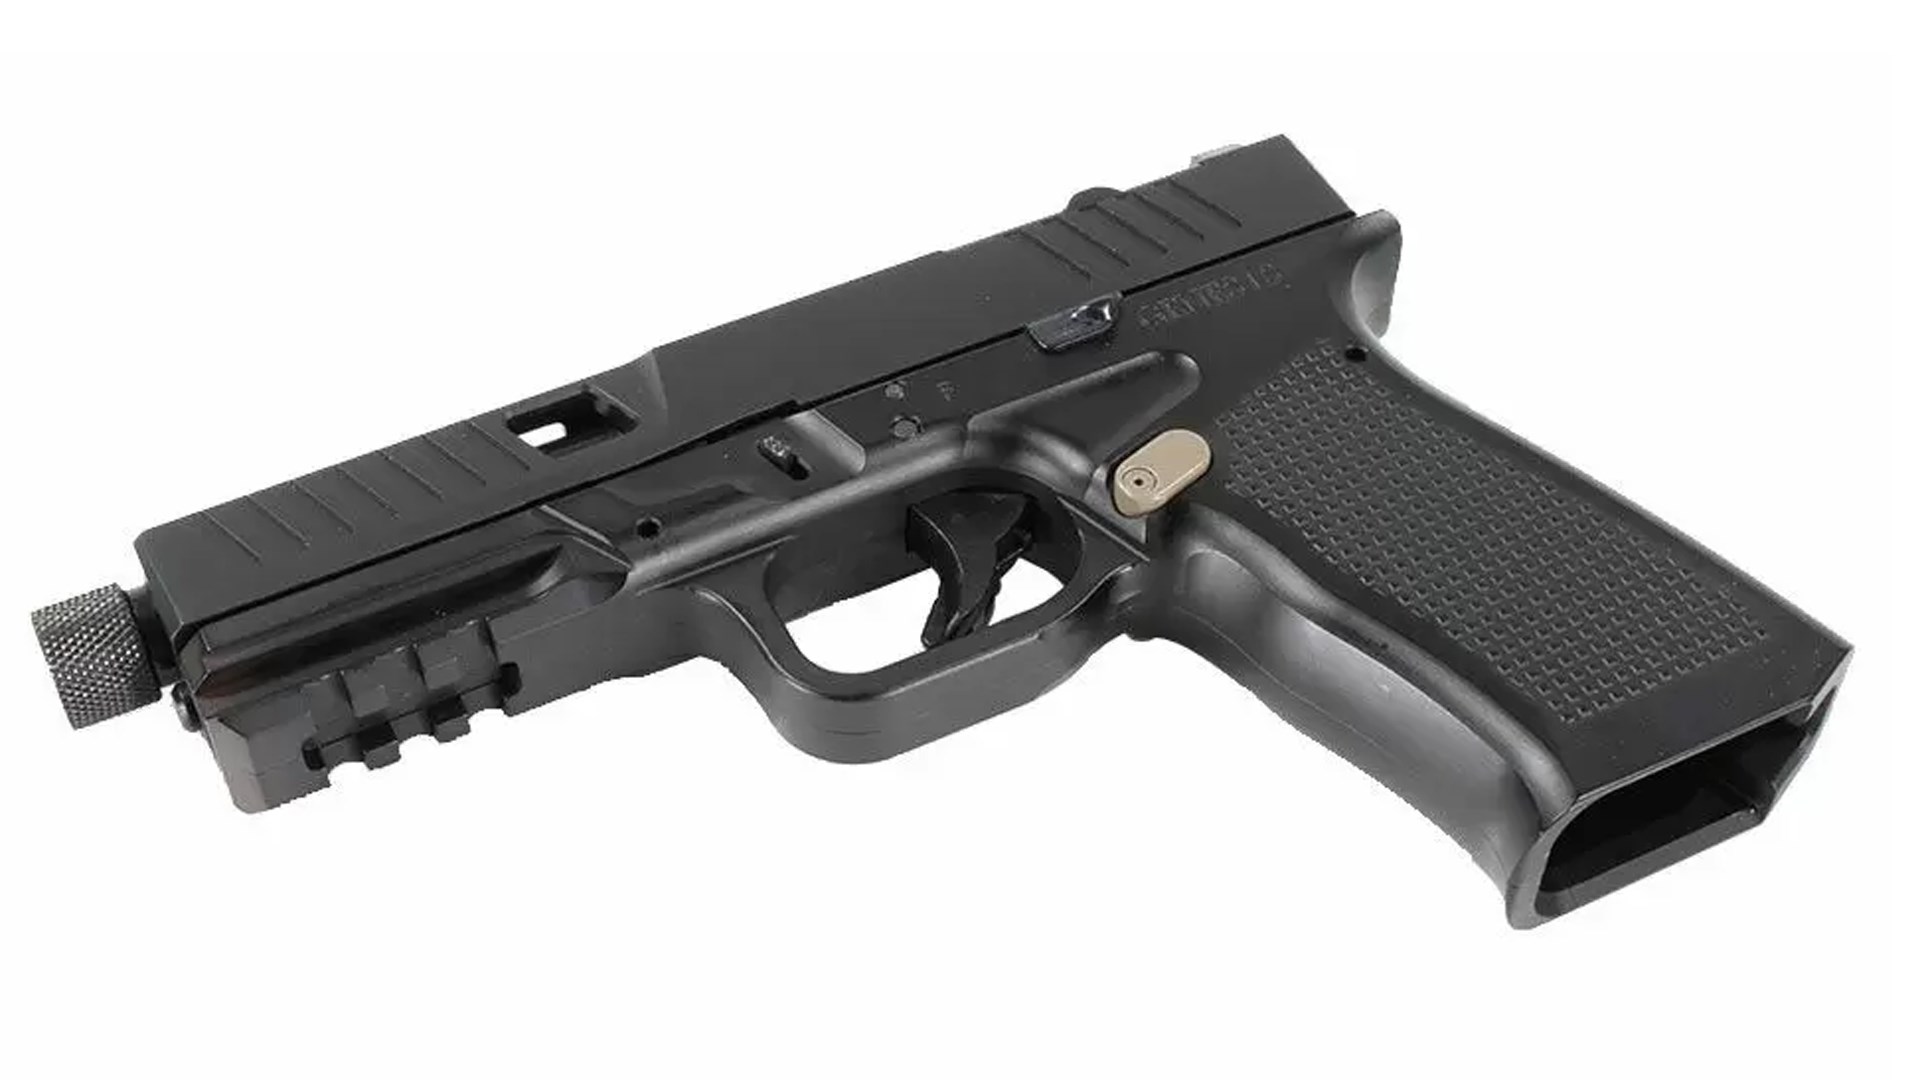 Underside of the black Bear Creek Arsenal Genes1s II pistol.